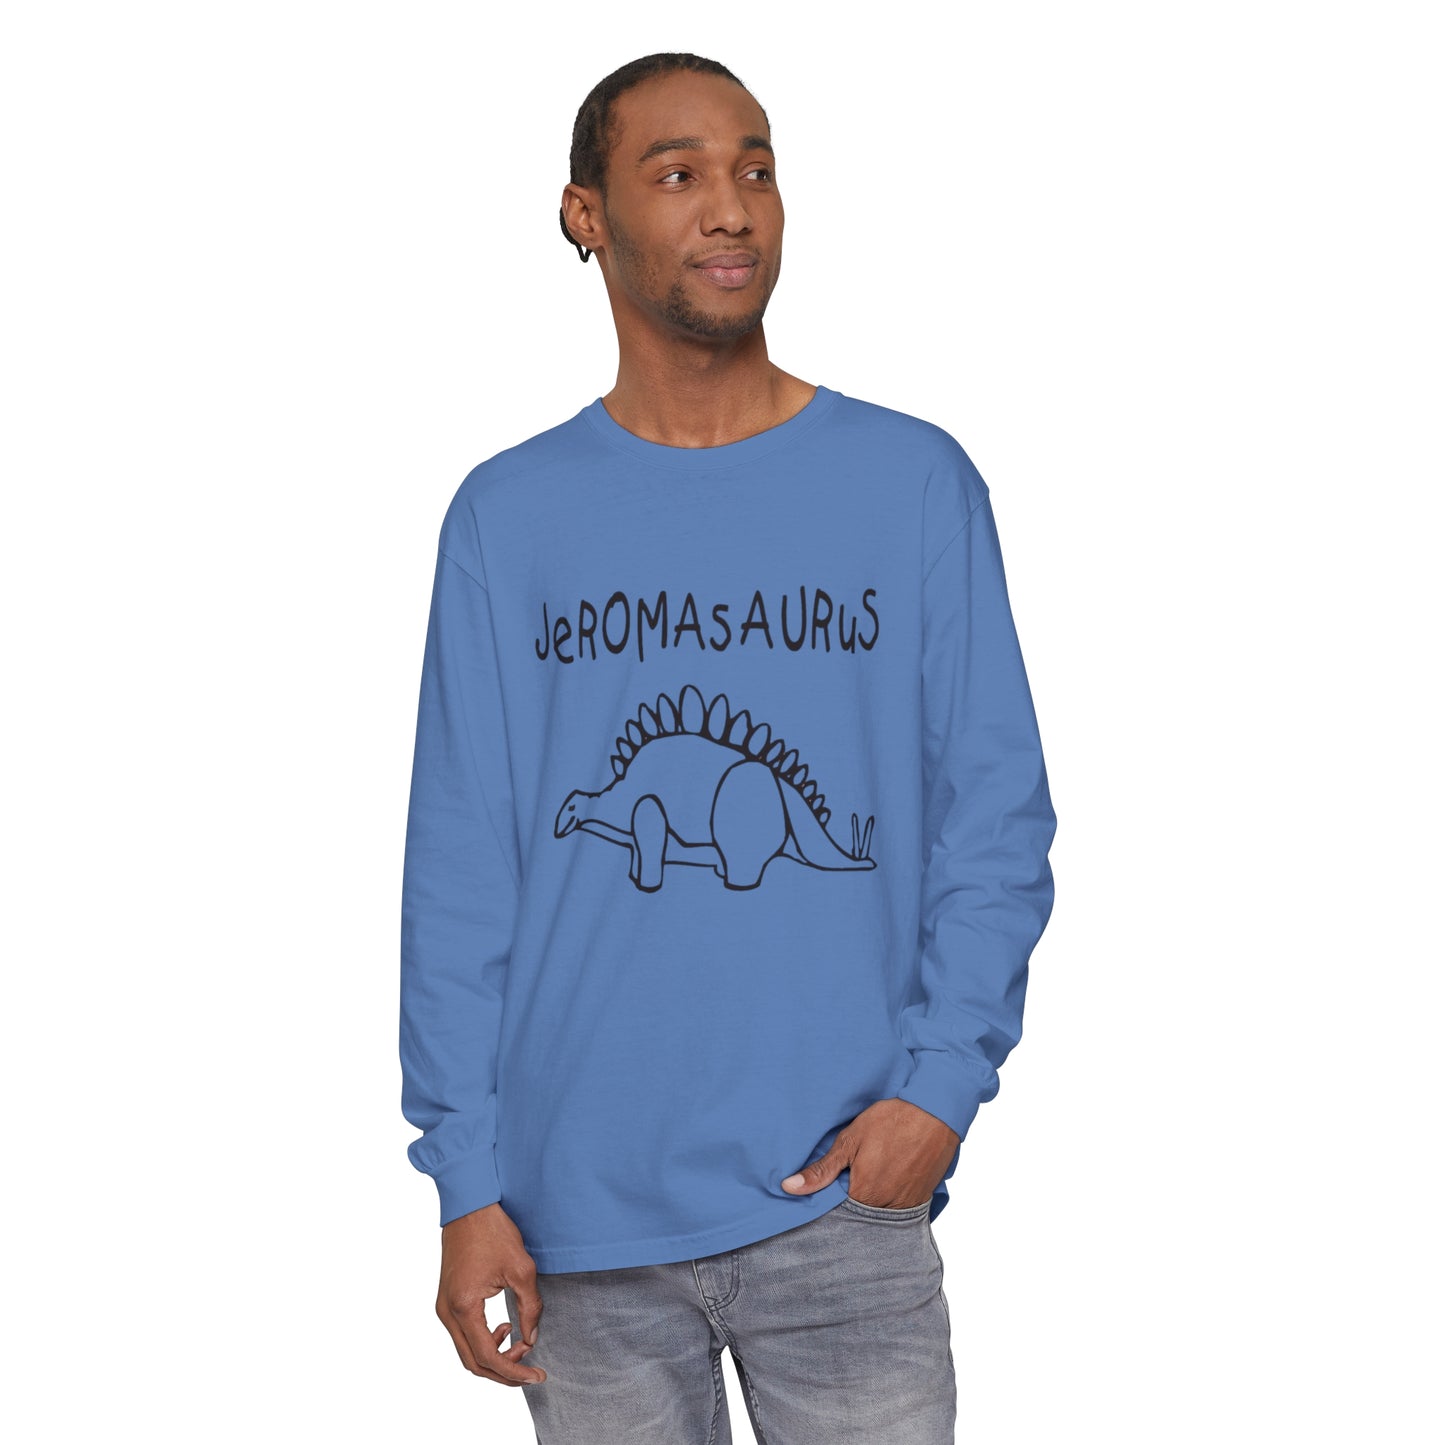 Jeromasaurus JBD  Garment-dyed Long Sleeve T-Shirt